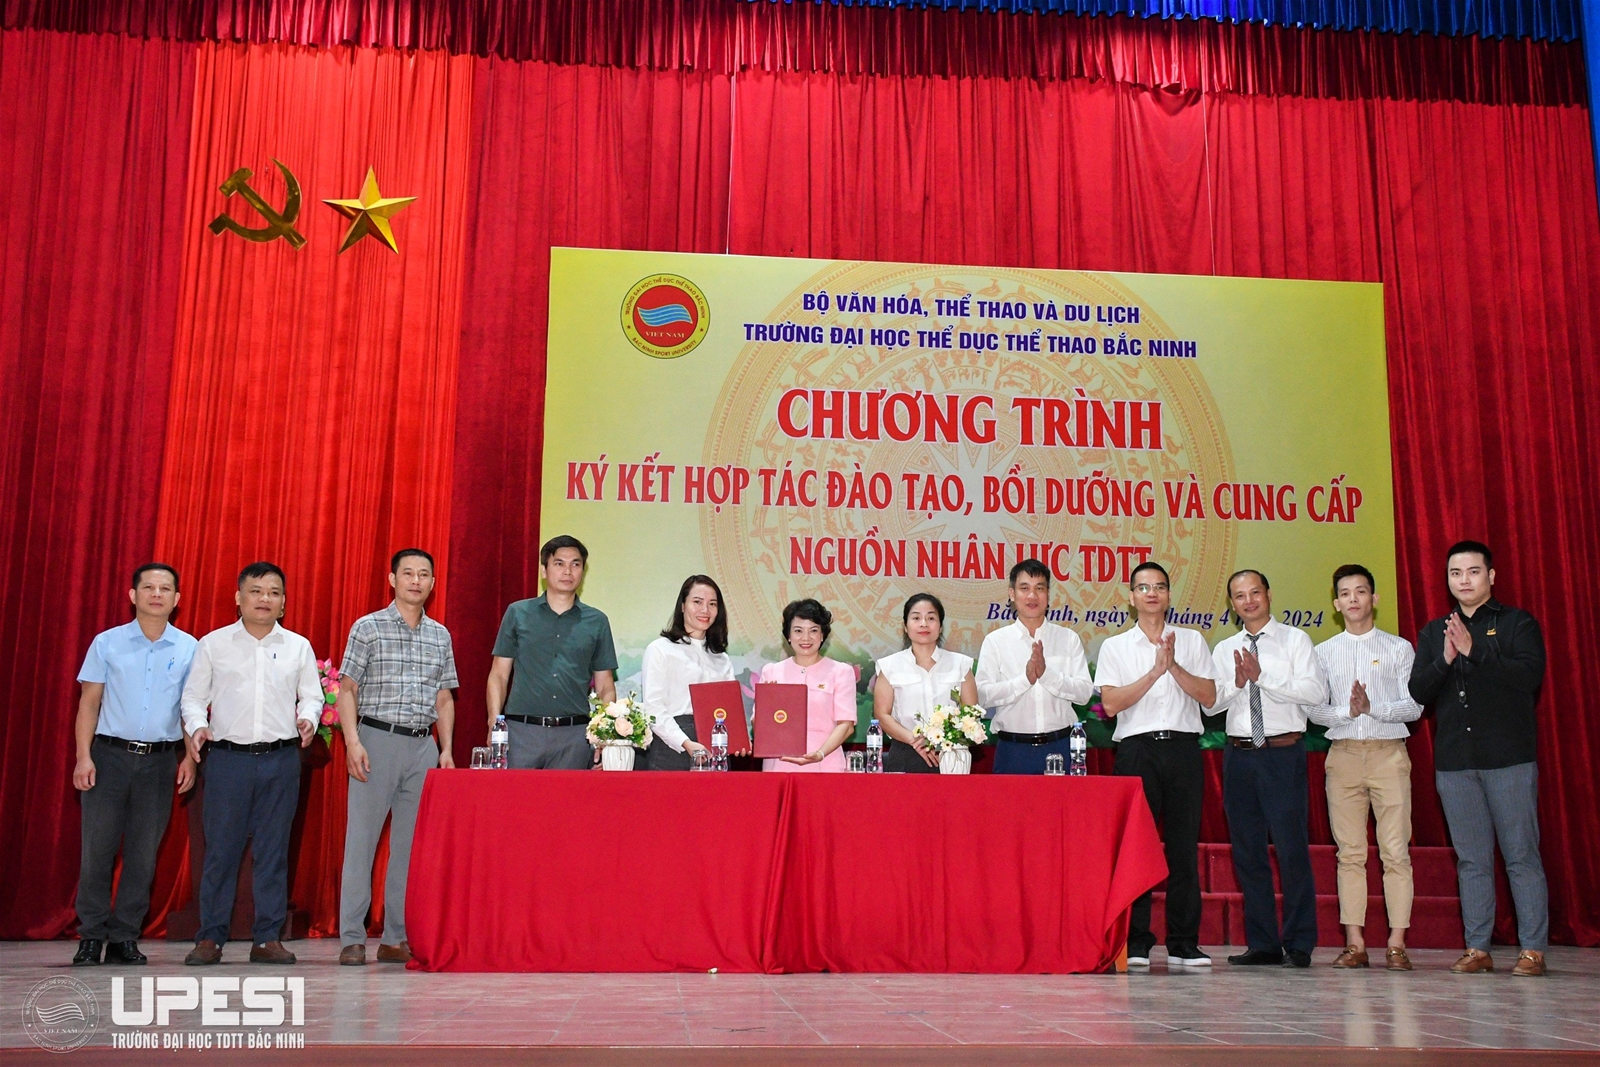 Chương trình ký kết hợp tác đào tạo, bồi dưỡng và cung cấp nguồn nhân lực TDTT tại Trường Đại học TDTT Bắc Ninh năm 2024 - Ảnh 7.